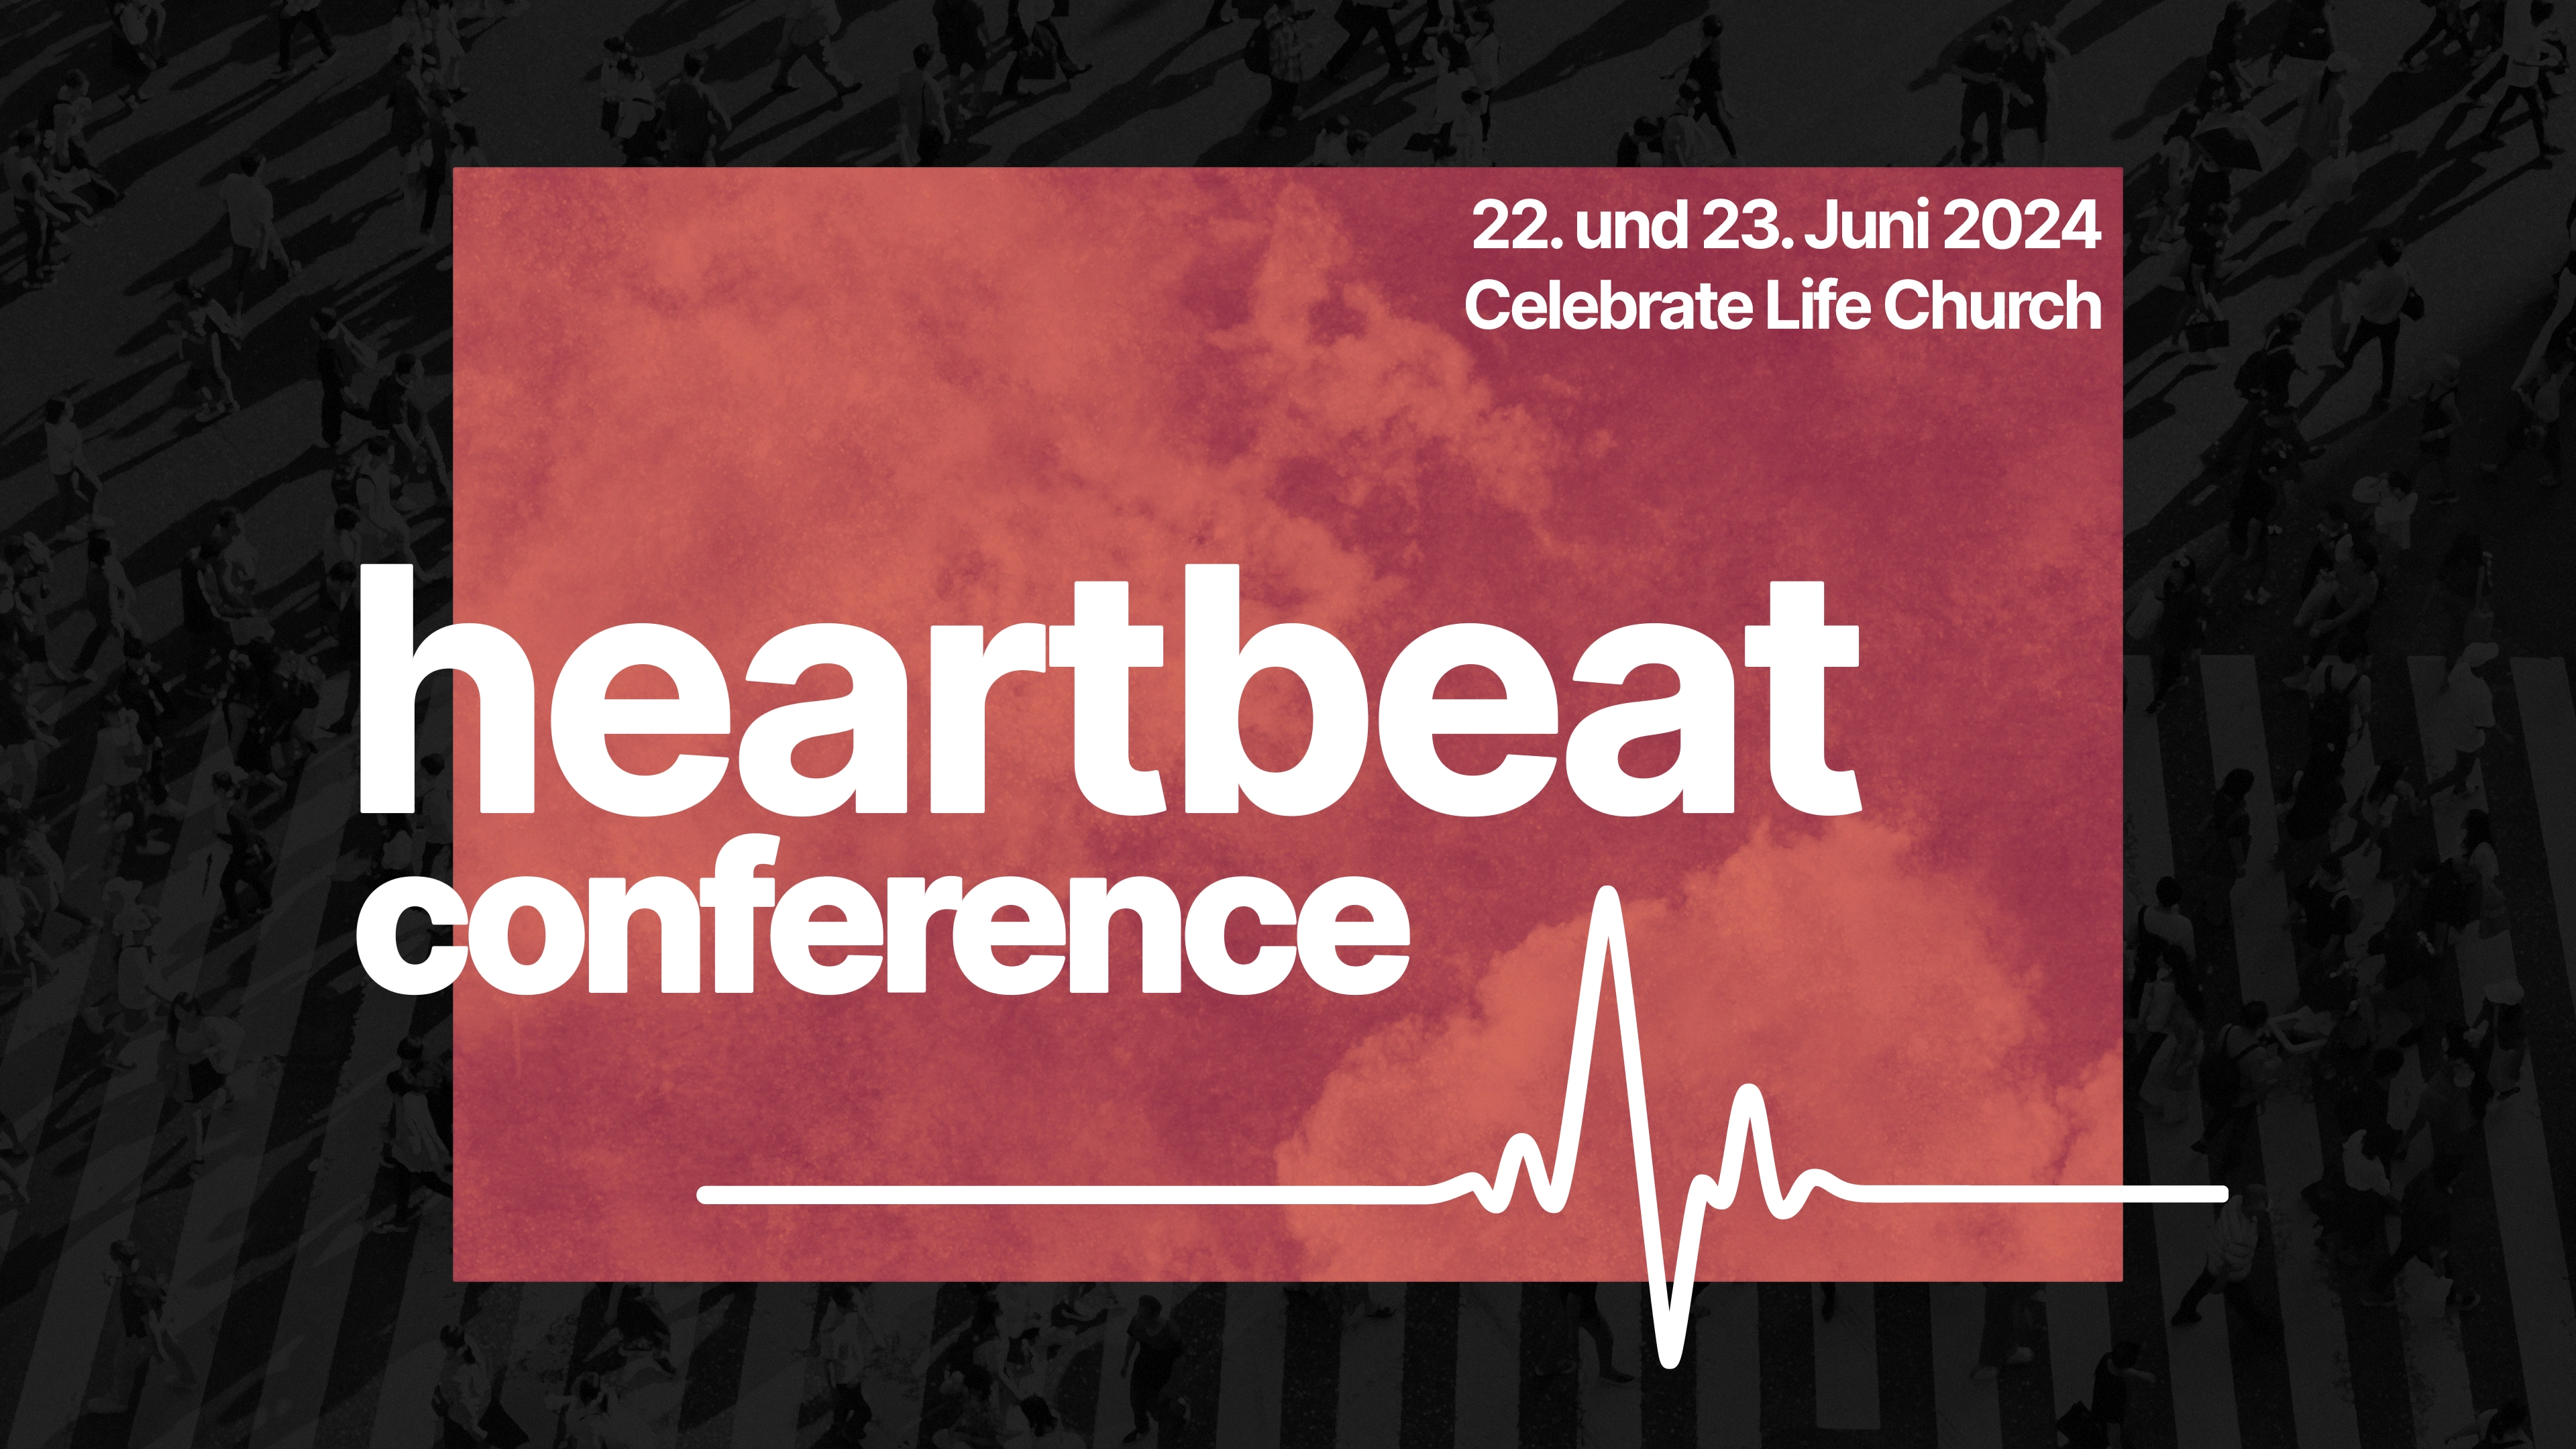 Werbefolie für die Heartbeat Conference am 22. und 23. Juni 2024